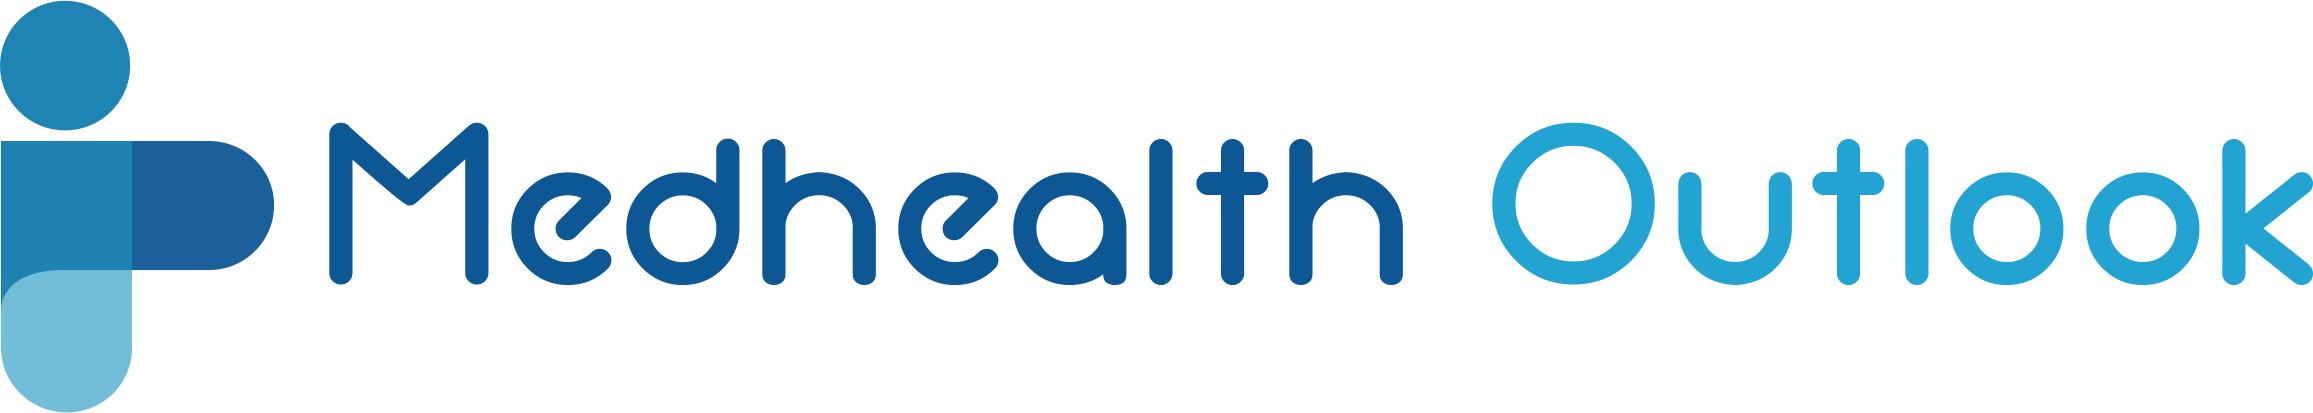 medhealth outlook-logo